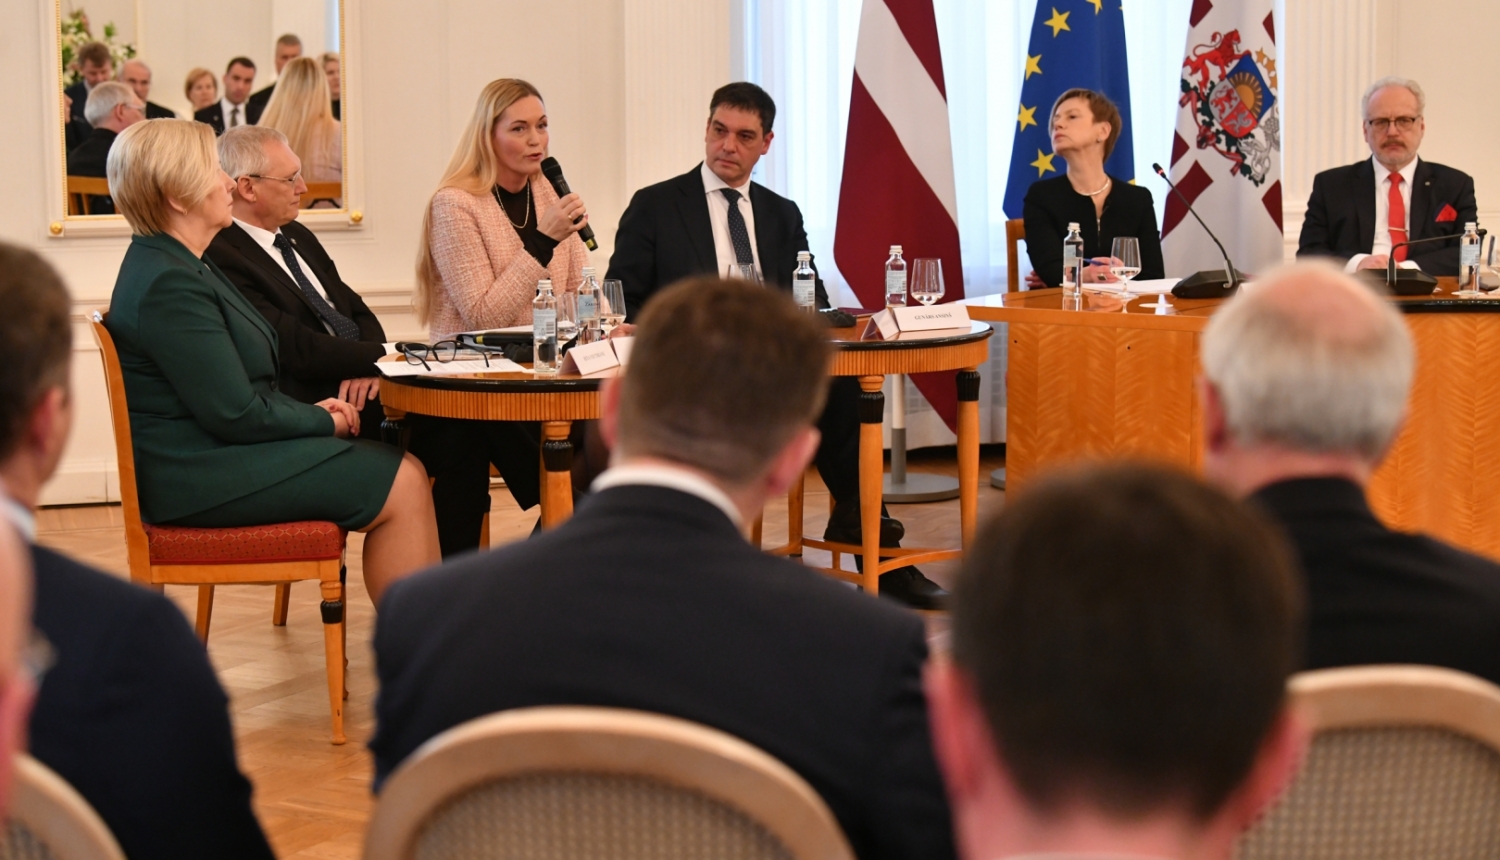 Ādažu novada domes priekšsēdētāja Karīna Miķelsone kopā ar citiem pašvaldību vadītājiem Rīgas pilī tiekas ar Valsts prezidentu